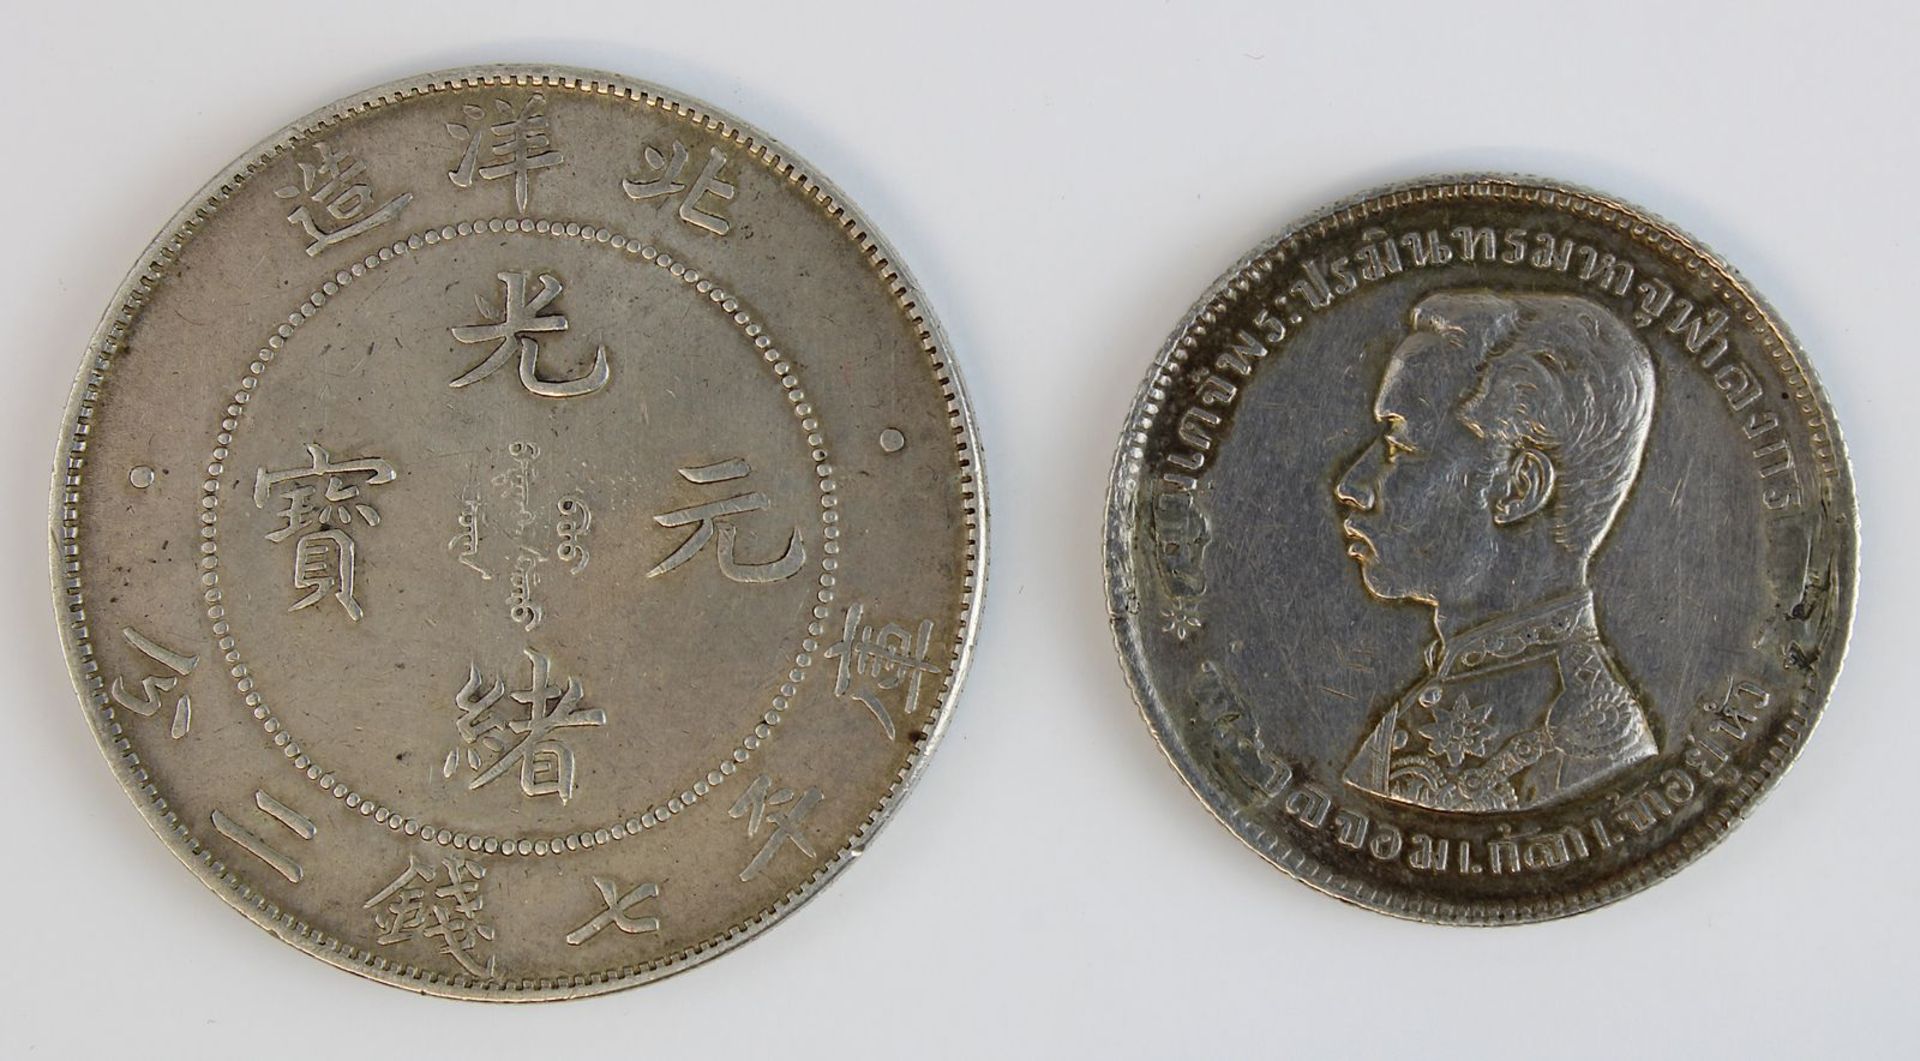 Zwei Silbermünzen, China und Thailand, Anfang 20. Jh.: Münze zu 1 Dollar, China Chihli Pei Yang, - Bild 2 aus 2